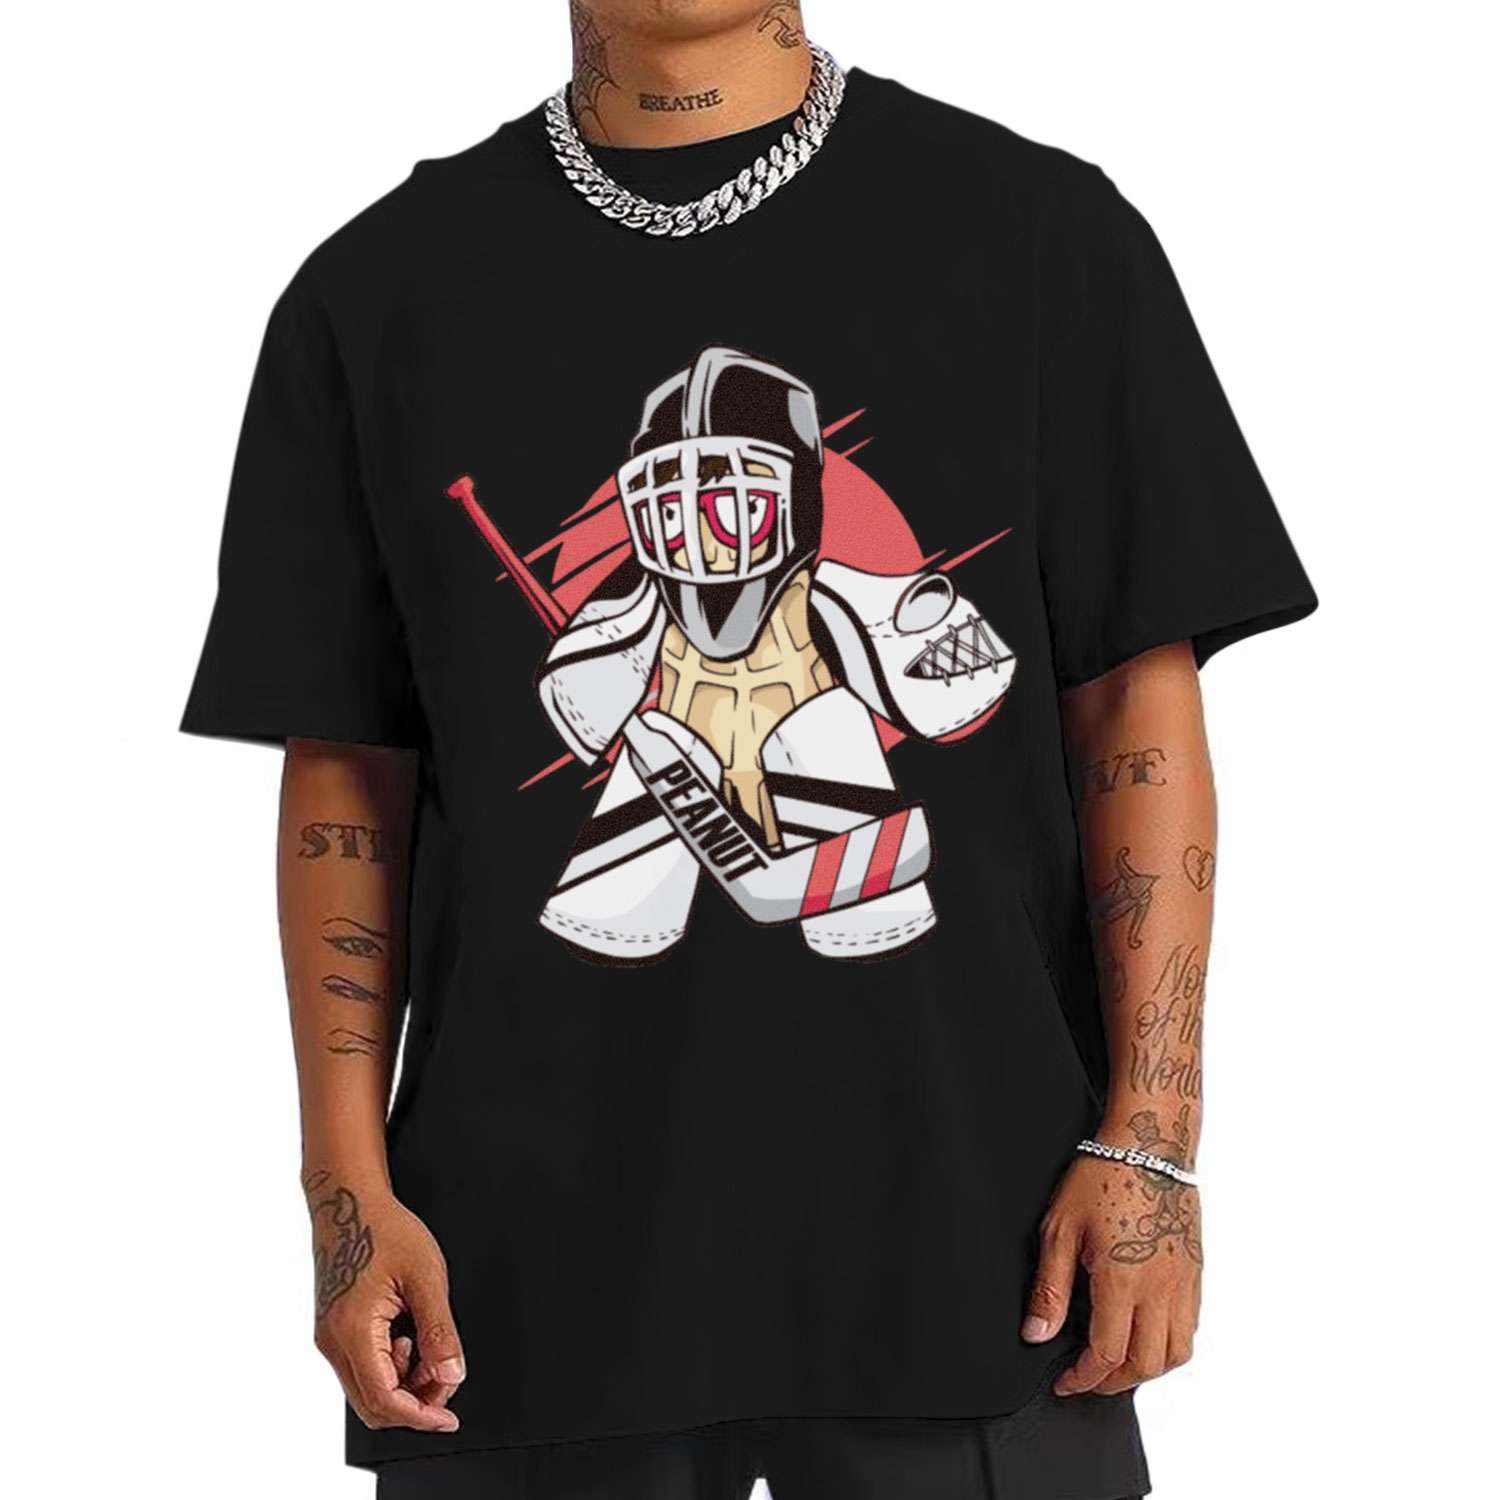 Peanut Hockey Goalie T-shirt